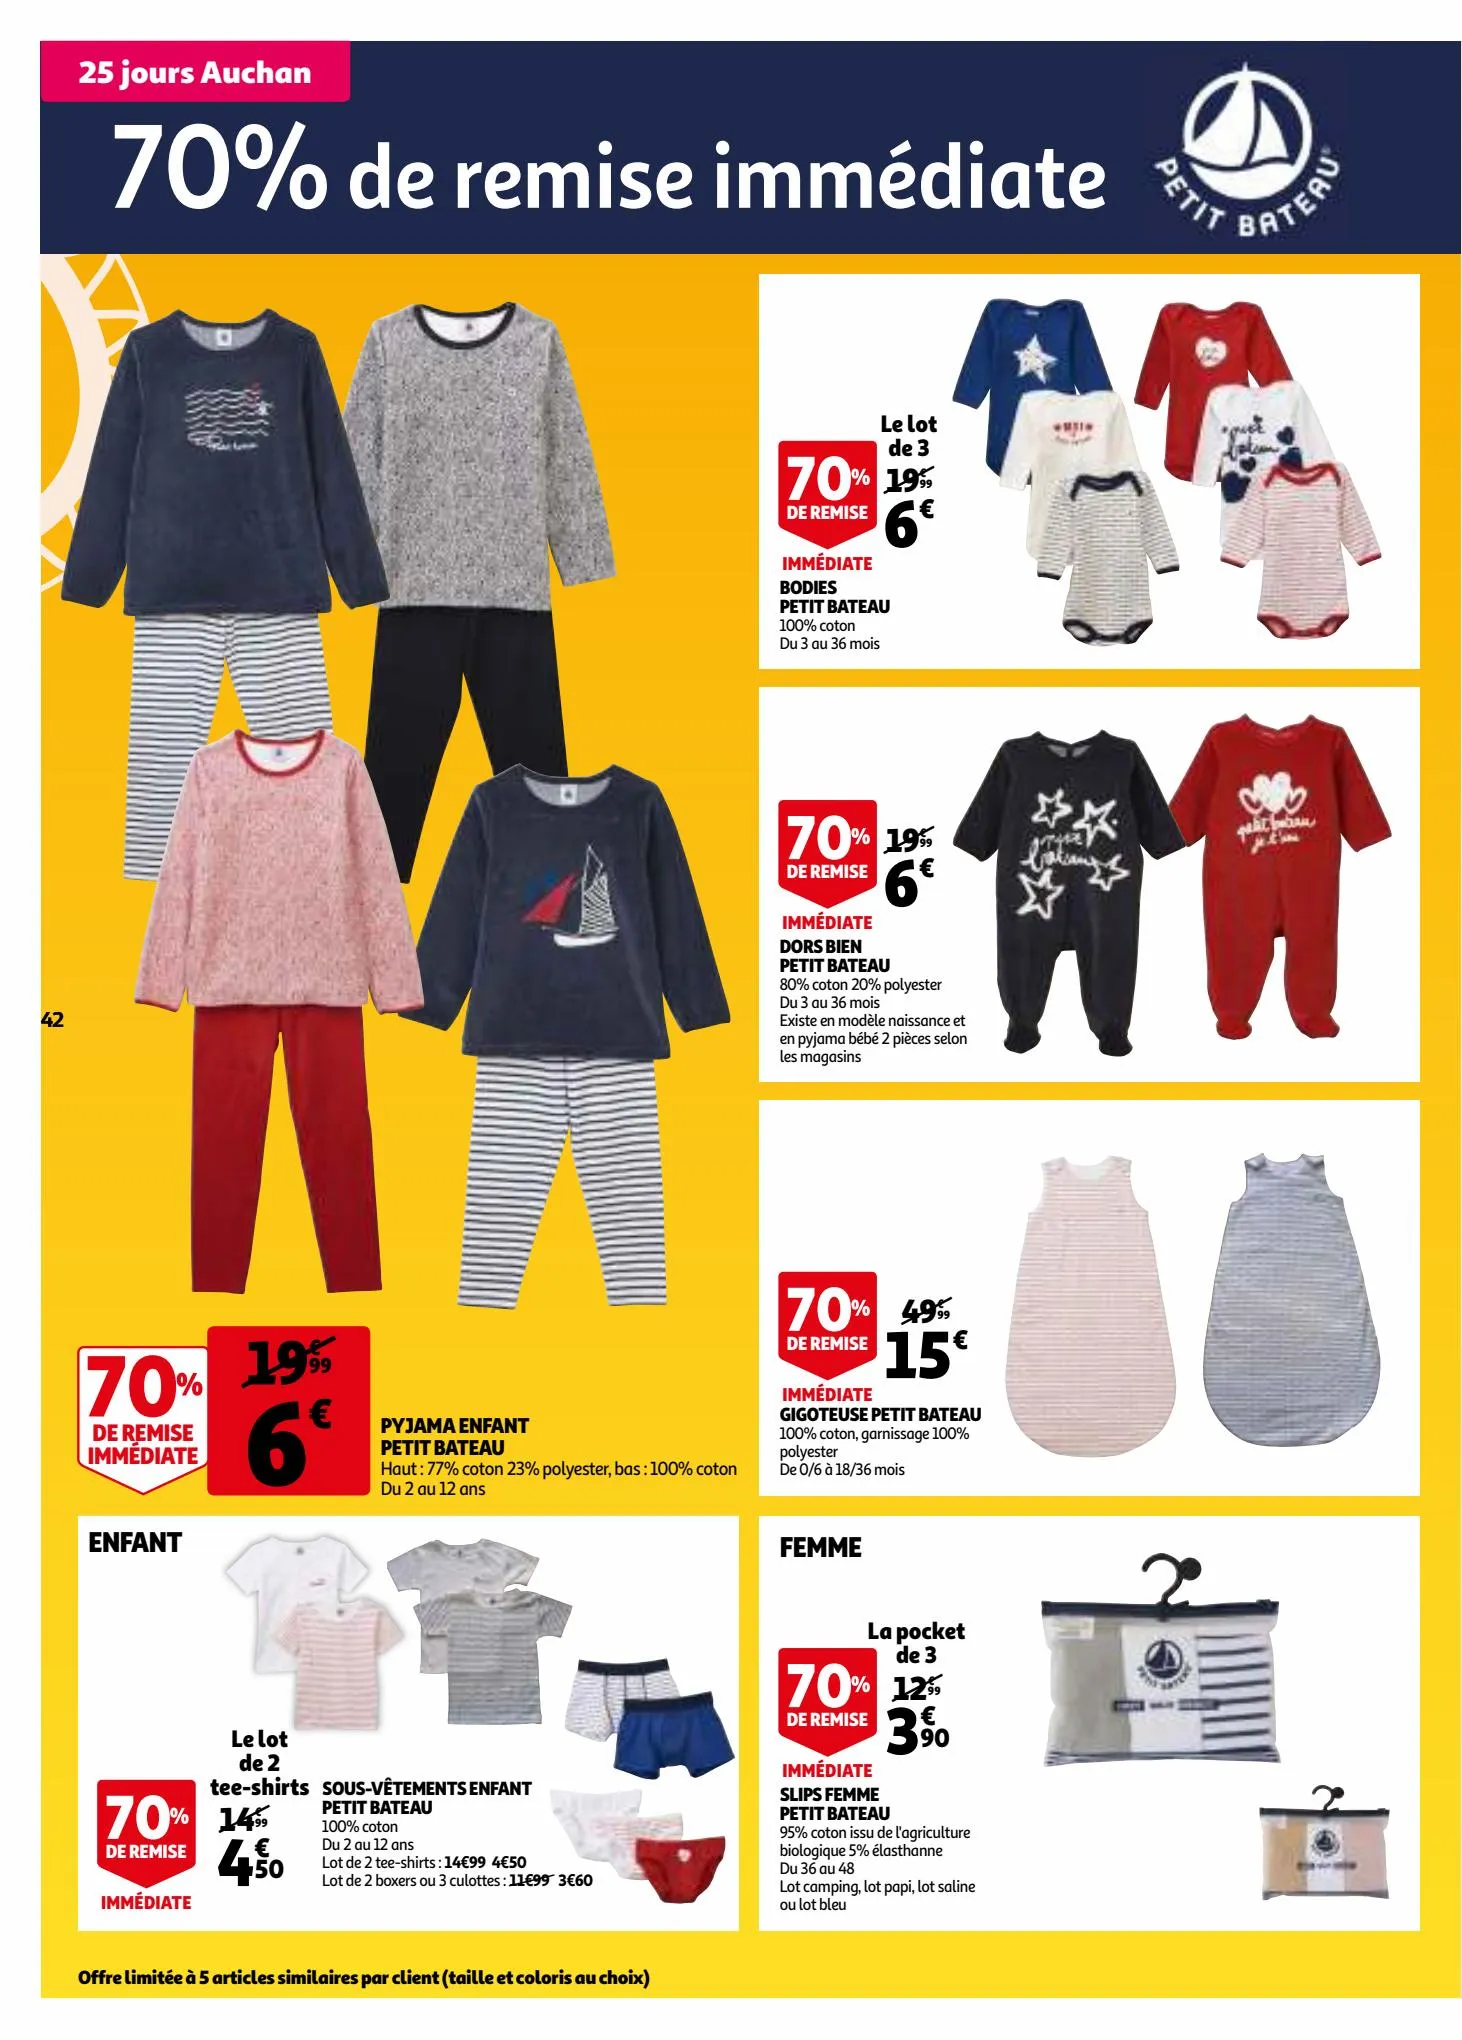 Catalogue 25 jours Auchan, page 00042